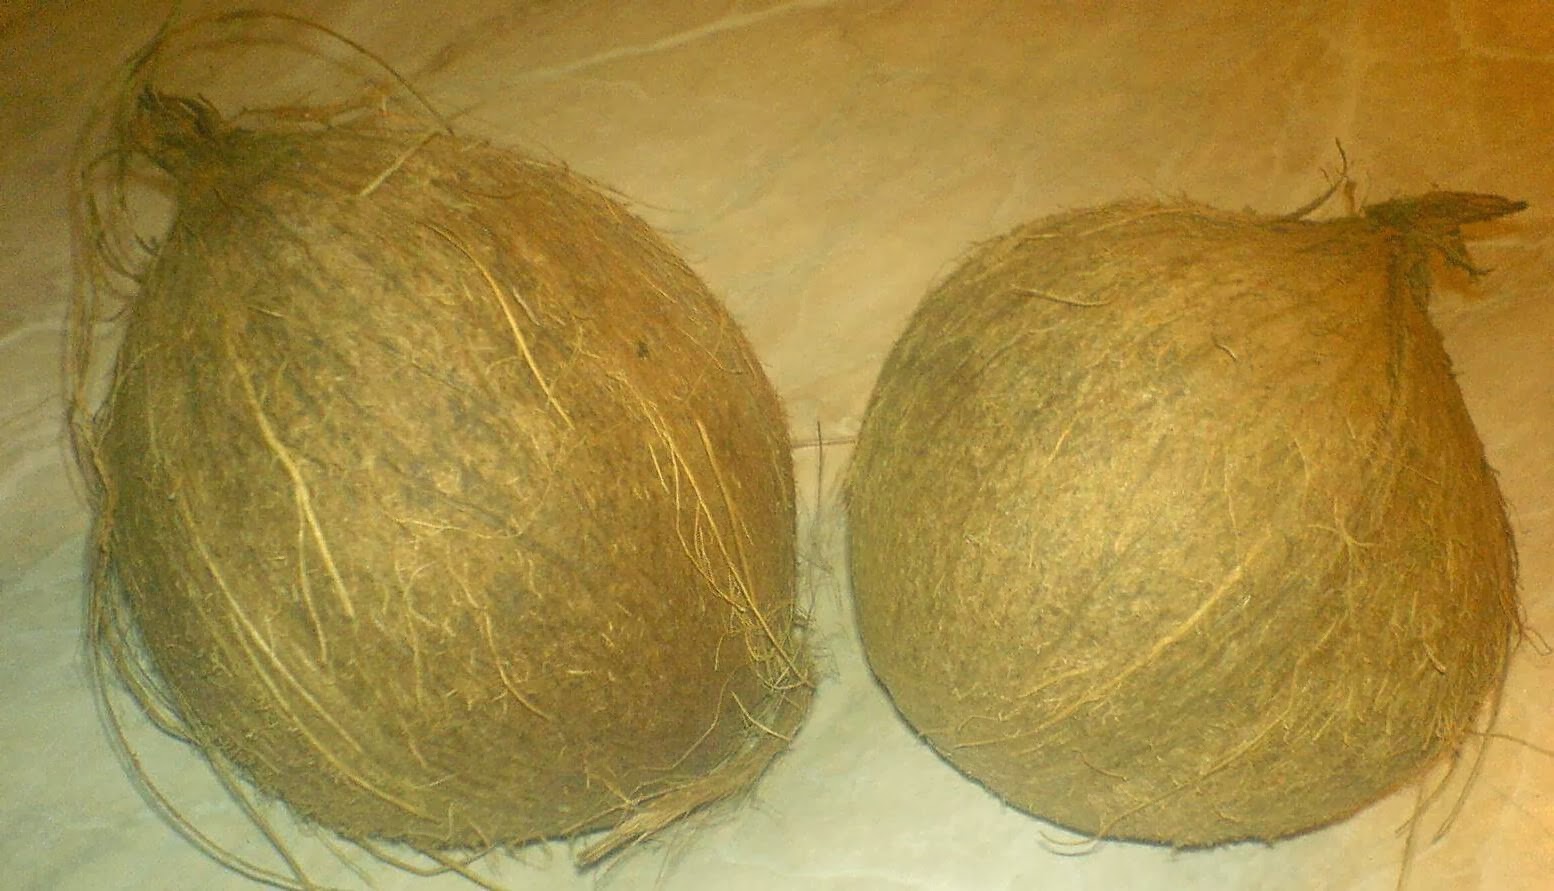 nuca, nuca de cocos, retete cu nuca de cocos, reteta cu nuca de cocos, preparate cu nuca de cocos, retete culinare, preparate culinare, cum alegem o nuca de cocos buna, cum cumparam o nuca de cocos sanatoasa, retete cocos, reteta cocos, nuci de cocos, nuci, 